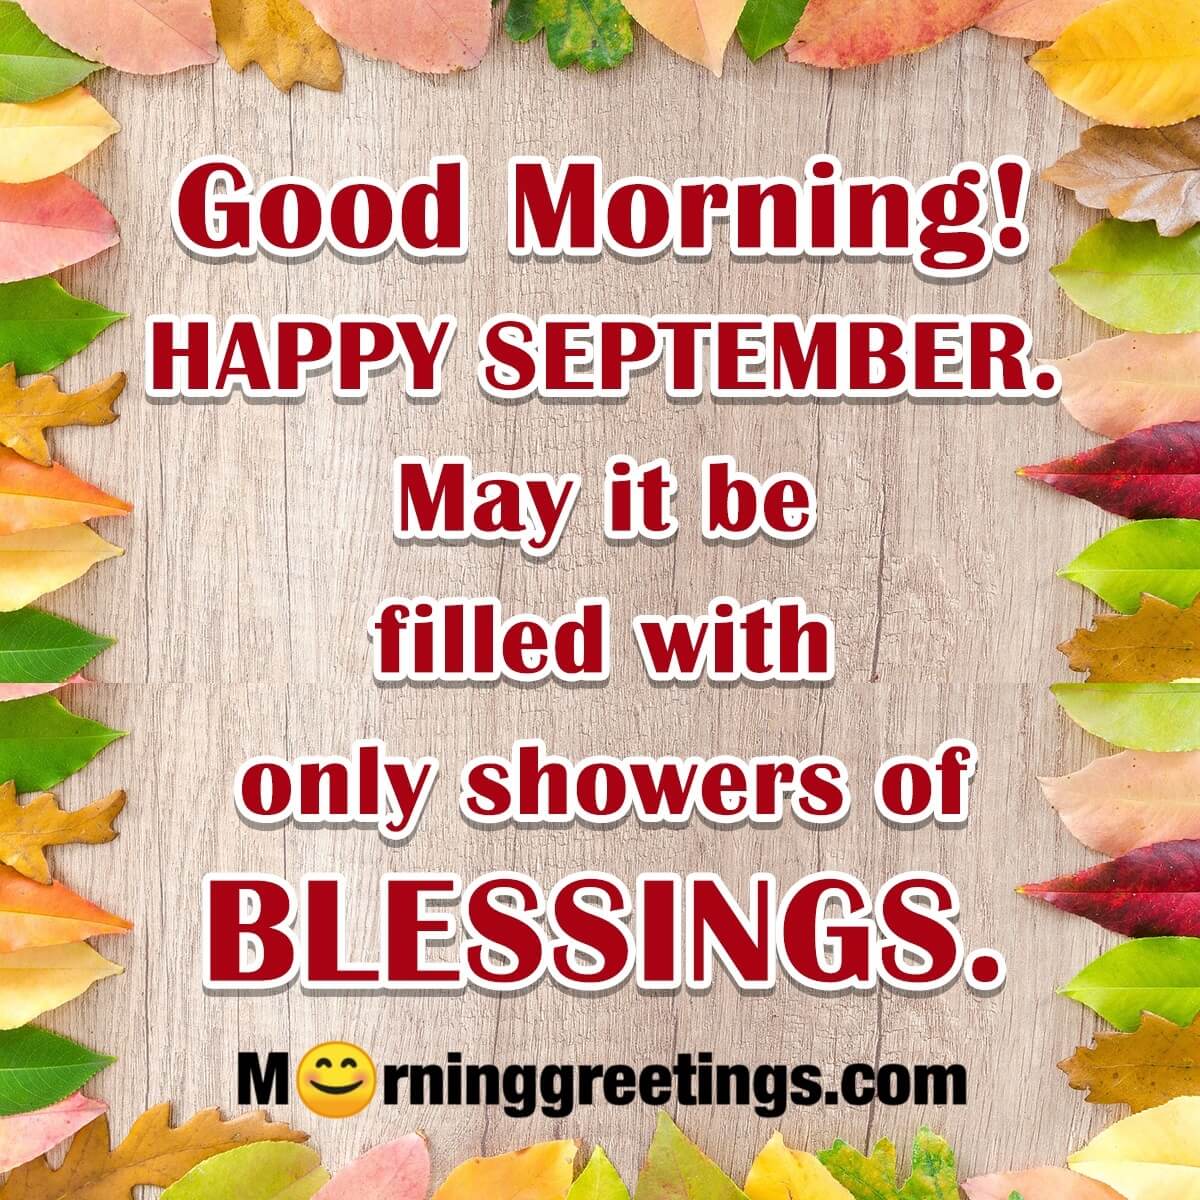 Good Morning! Happy September Blessings